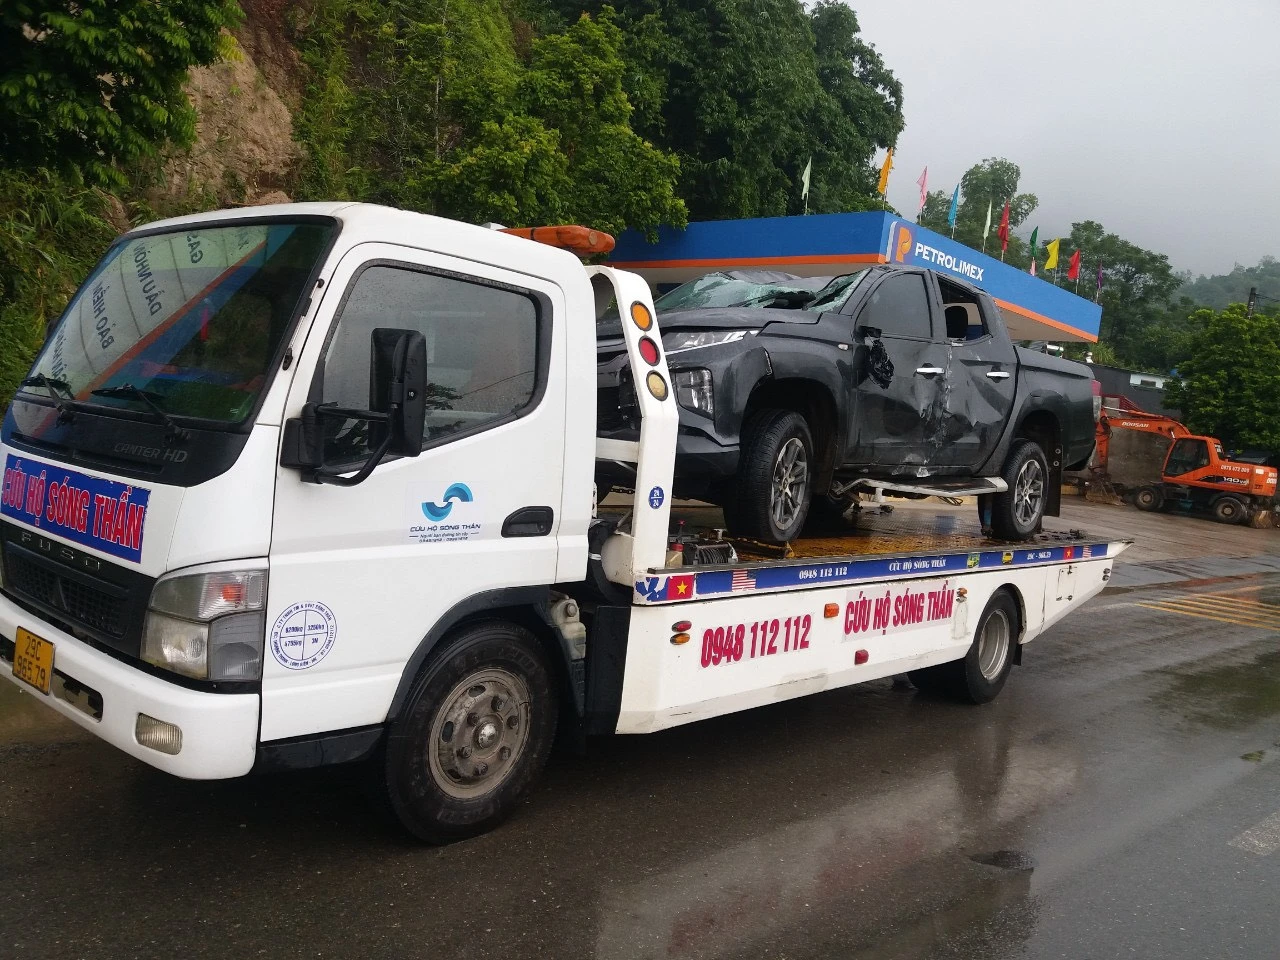 Thumbnail Địa chỉ chuyên cứu hộ xe hỏng, xe tai nạn ở Hà Nội | LH 0948.112.112